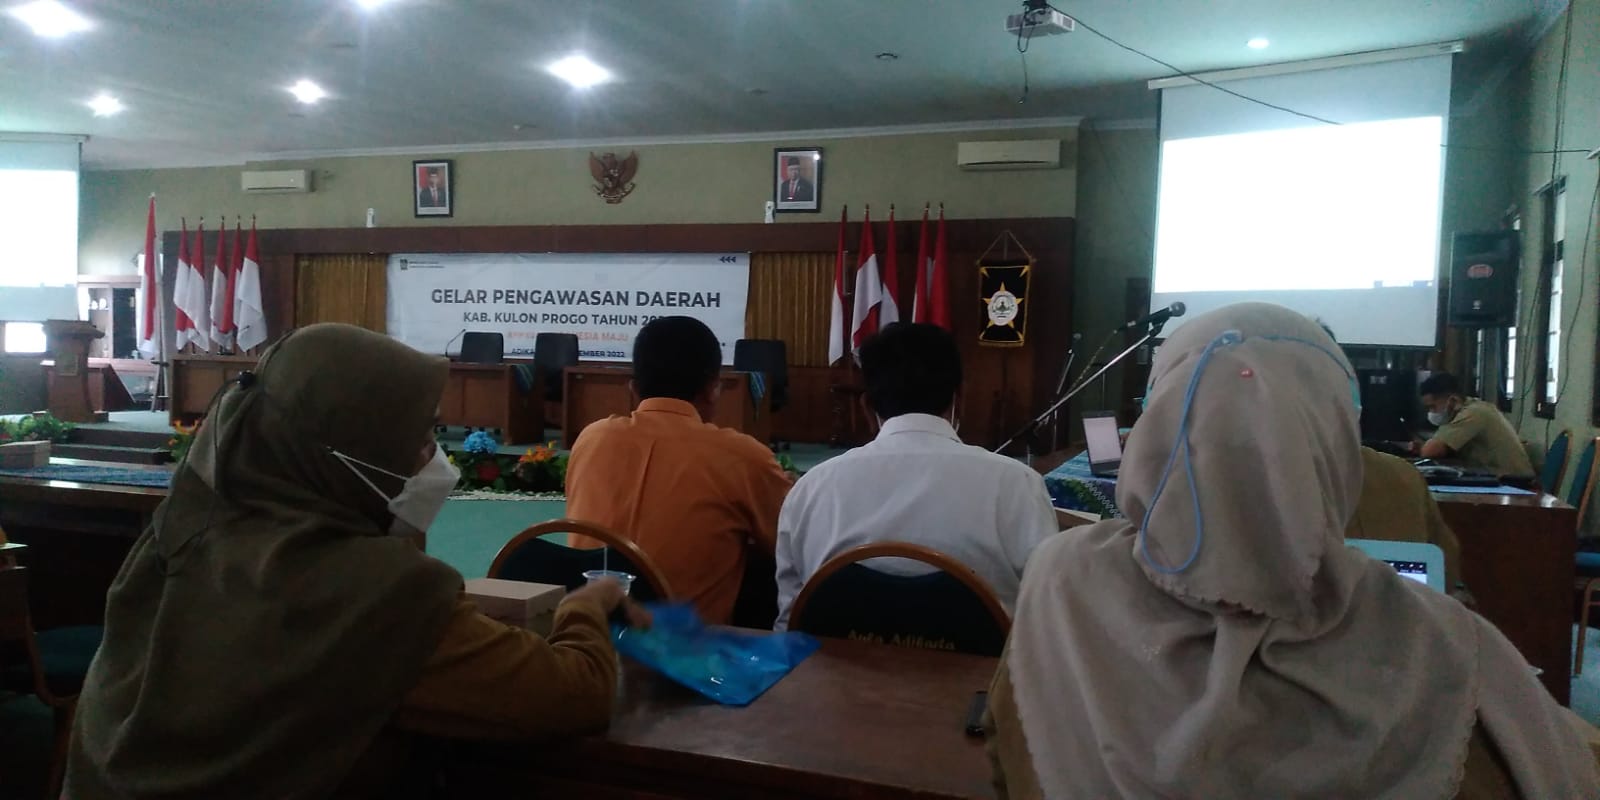 Gelar Pengawasasn Daerah “ APIP Kuat, Indonesia Maju”